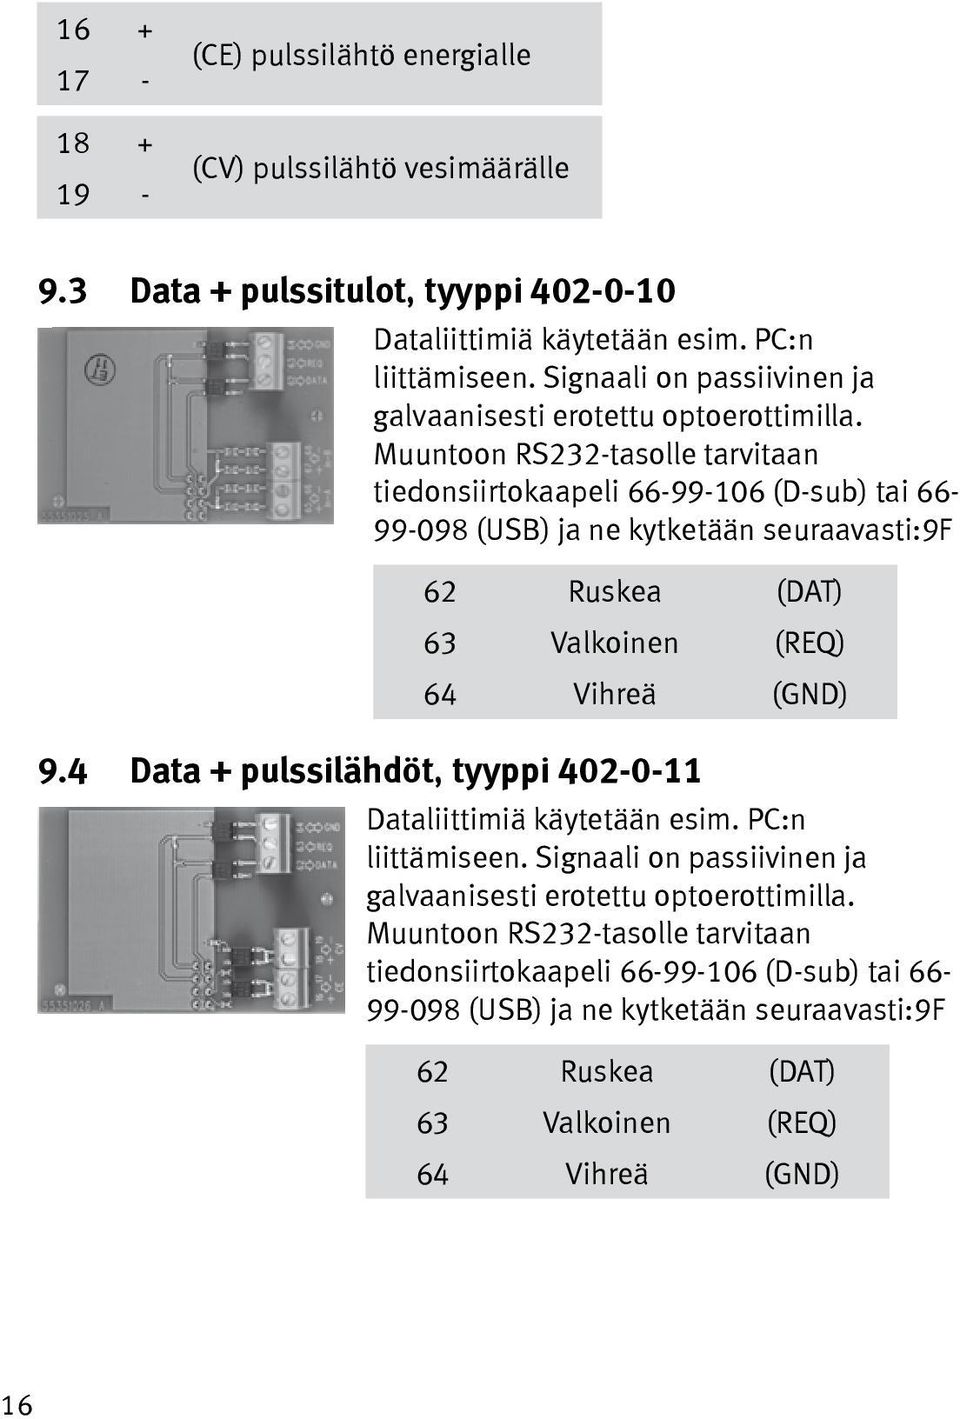 Muuntoon RS232-tasolle tarvitaan tiedonsiirtokaapeli 66-99-106 (D-sub) tai 66-99-098 (USB) ja ne kytketään seuraavasti:9f 62 Ruskea (DAT) 63 Valkoinen (REQ) 64 Vihreä (GND) 9.